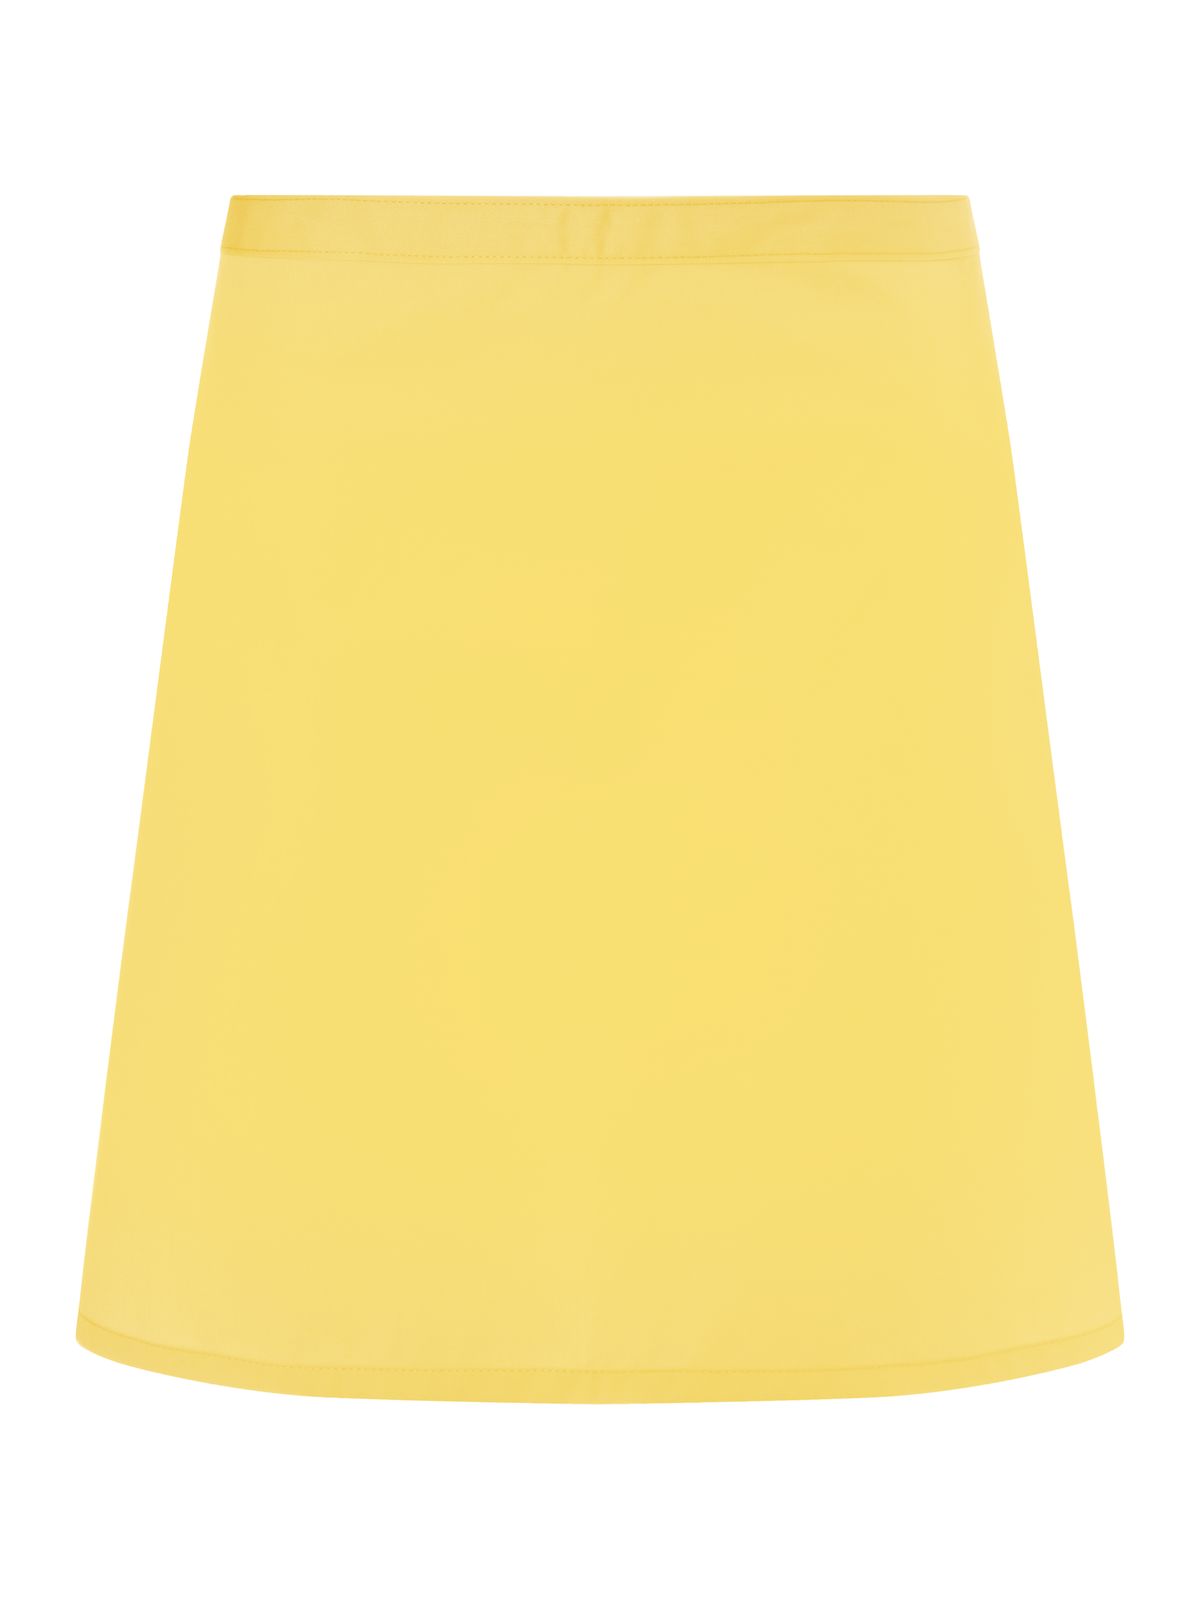 apron-basic-sunny-yellow.webp